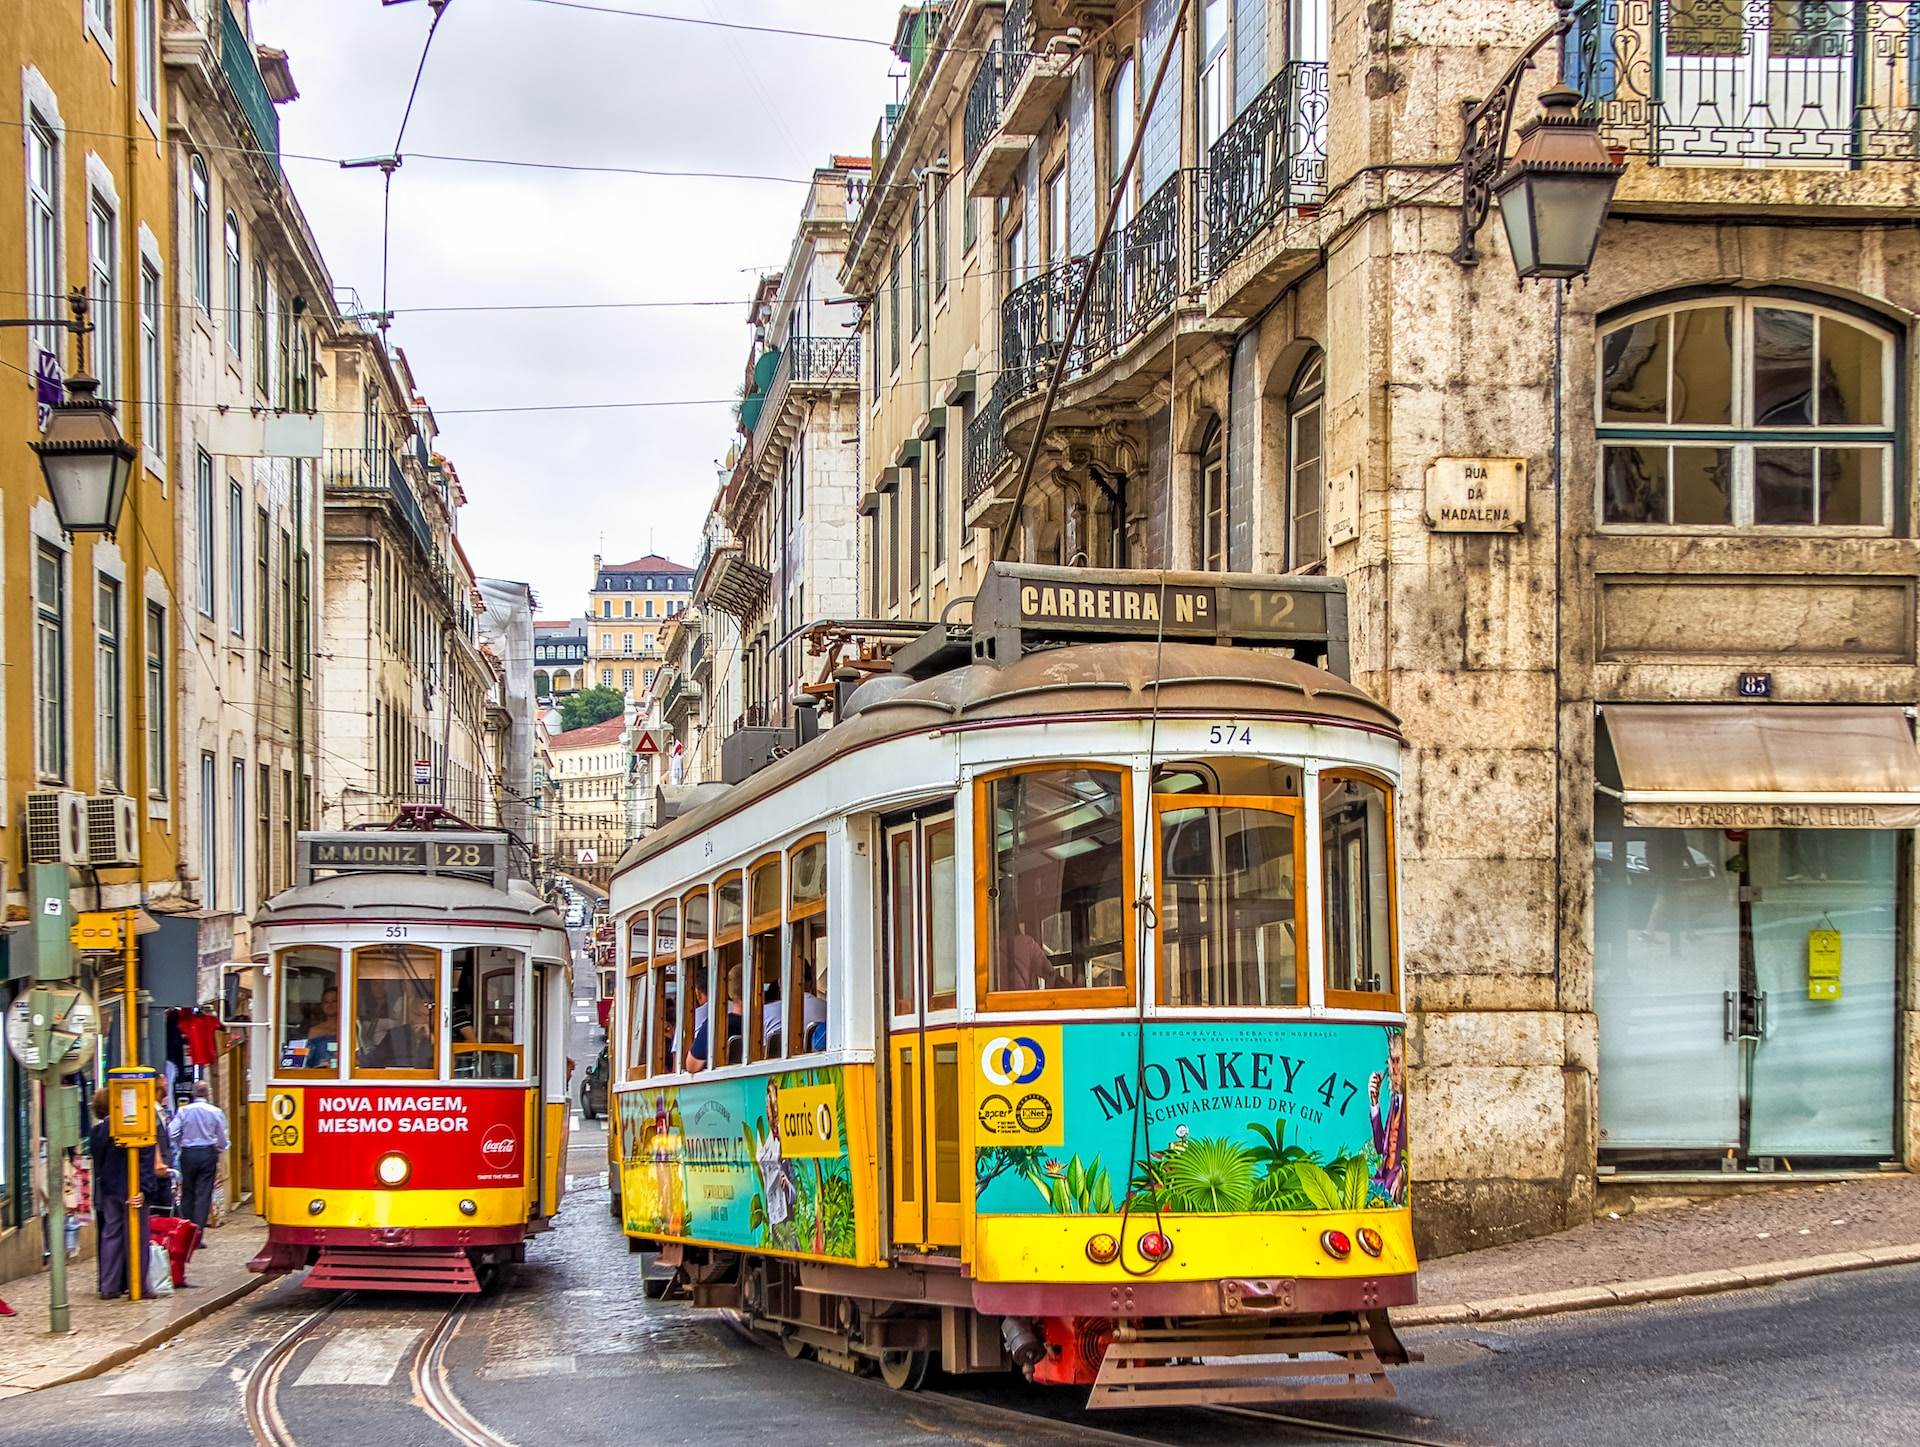 Legjobb ár-érték arányú európai úti célok: Lisszabon a csúcson kép